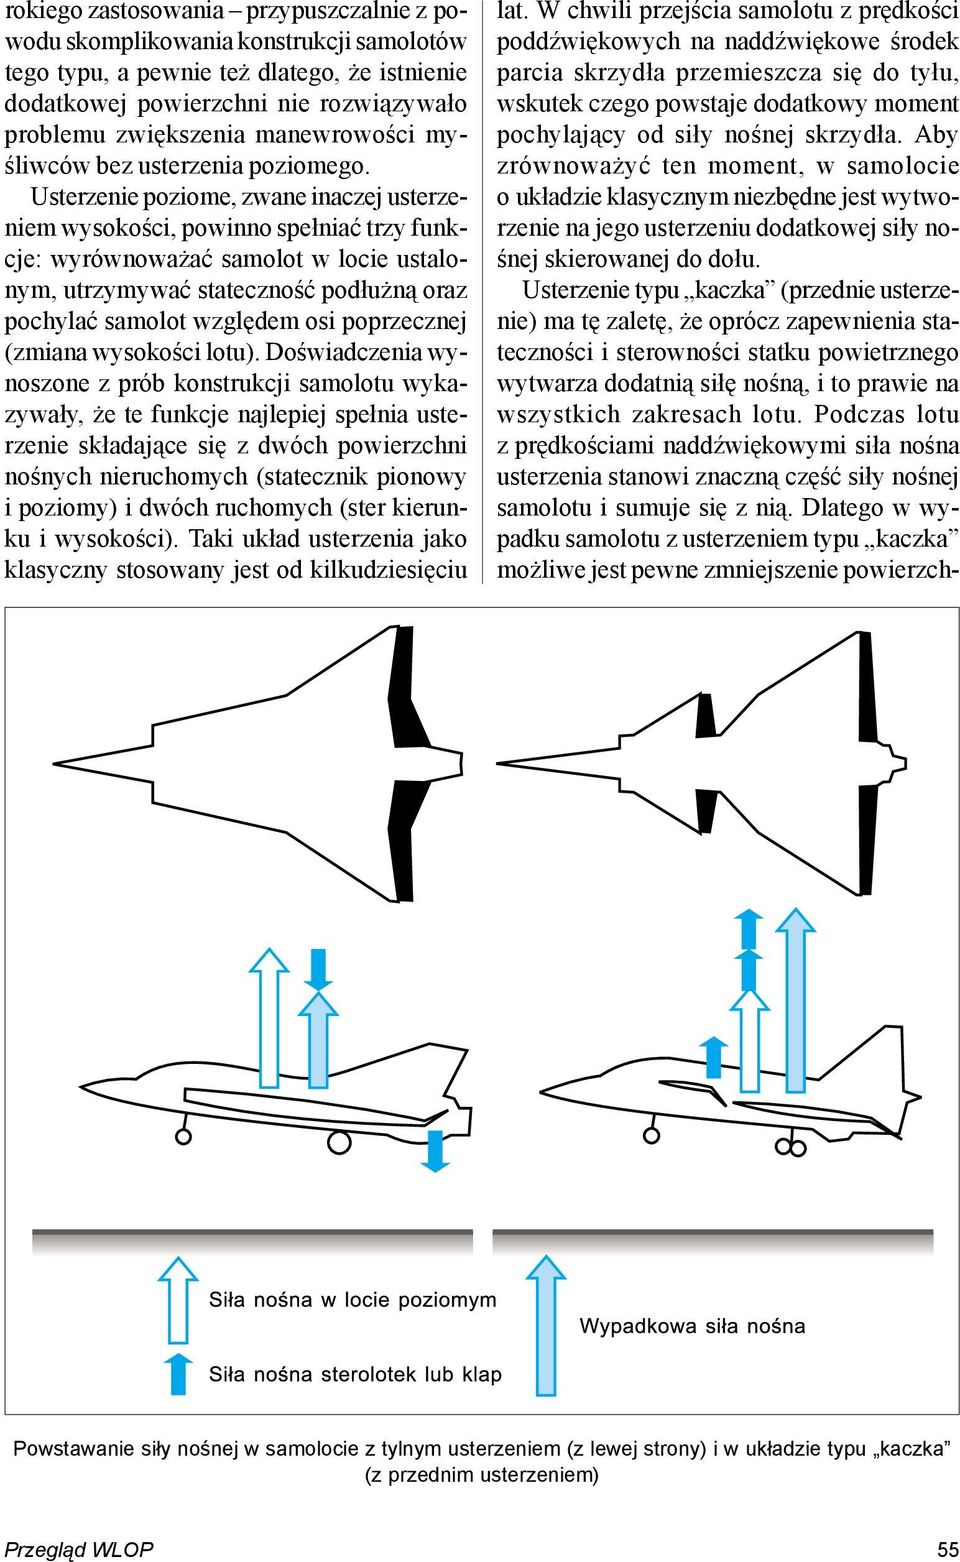 Usterzenie poziome, zwane inaczej usterzeniem wysokości, powinno spełniać trzy funkcje: wyrównoważać samolot w locie ustalonym, utrzymywać stateczność podłużną oraz pochylać samolot względem osi